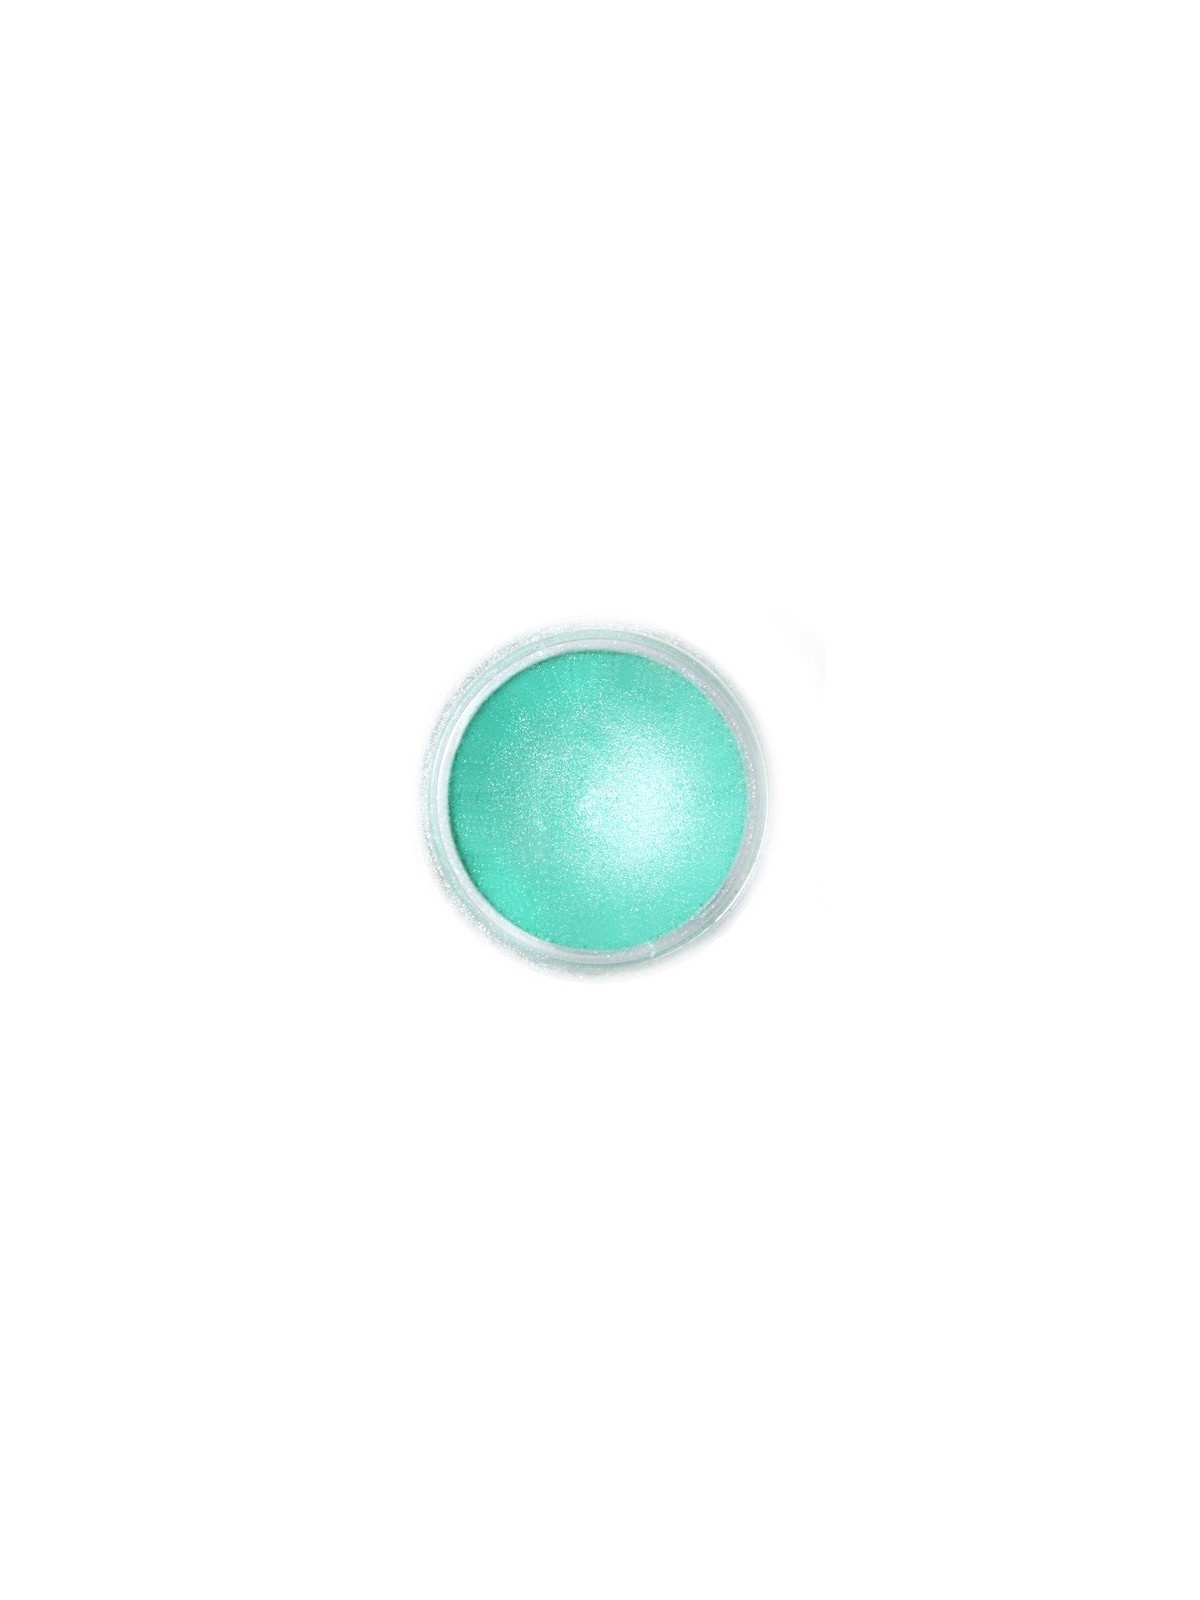 Jedlá prachová perleťová farba Fractal - Aurora Green, Zöld sarki fény (2 g)